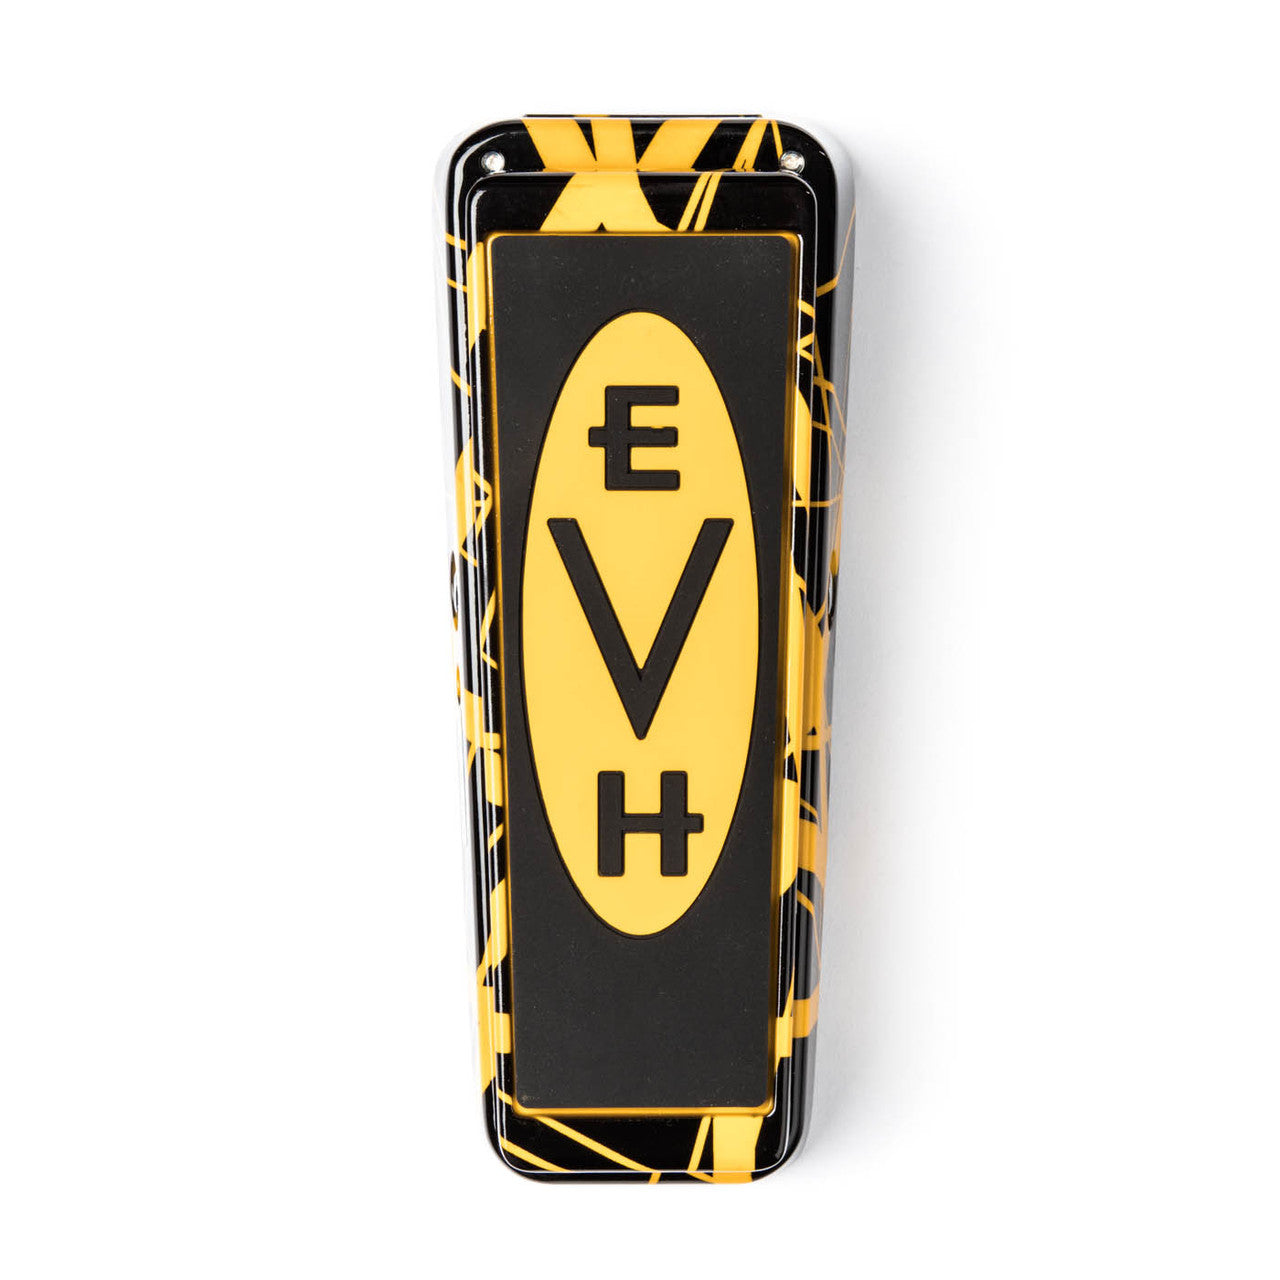 EVH95 Cry Baby Eddie Van Halen Signature Wah Wah